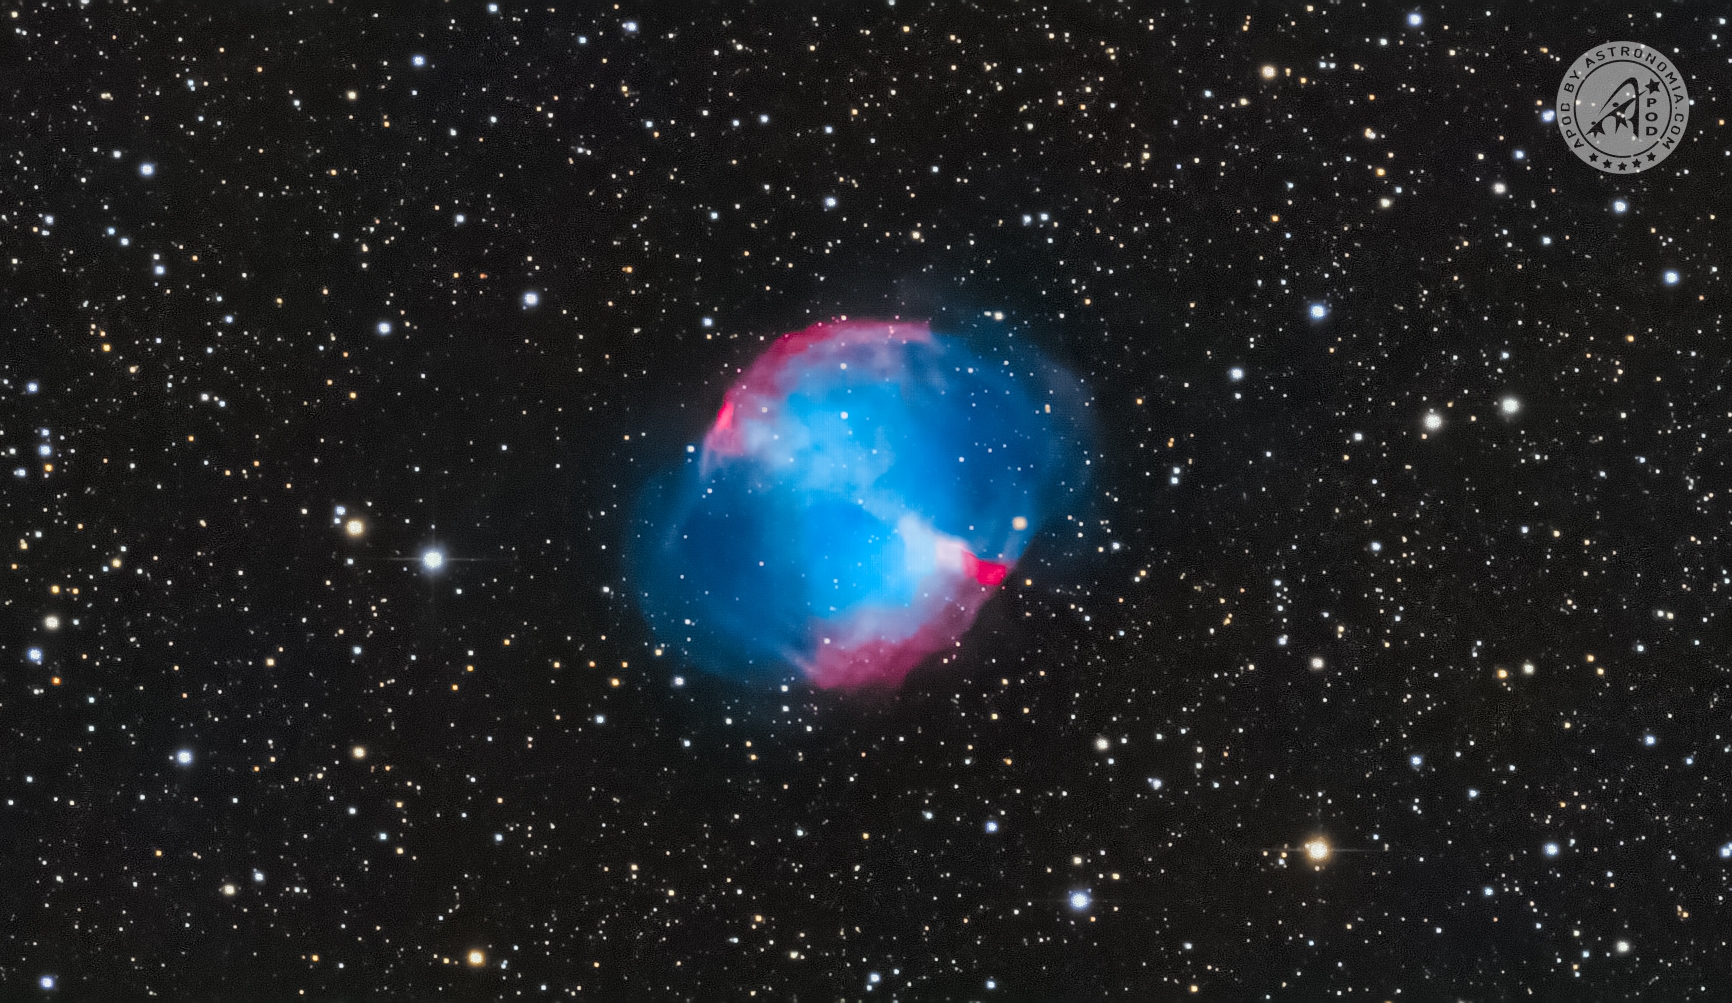 Nebulosa Manubrio M27